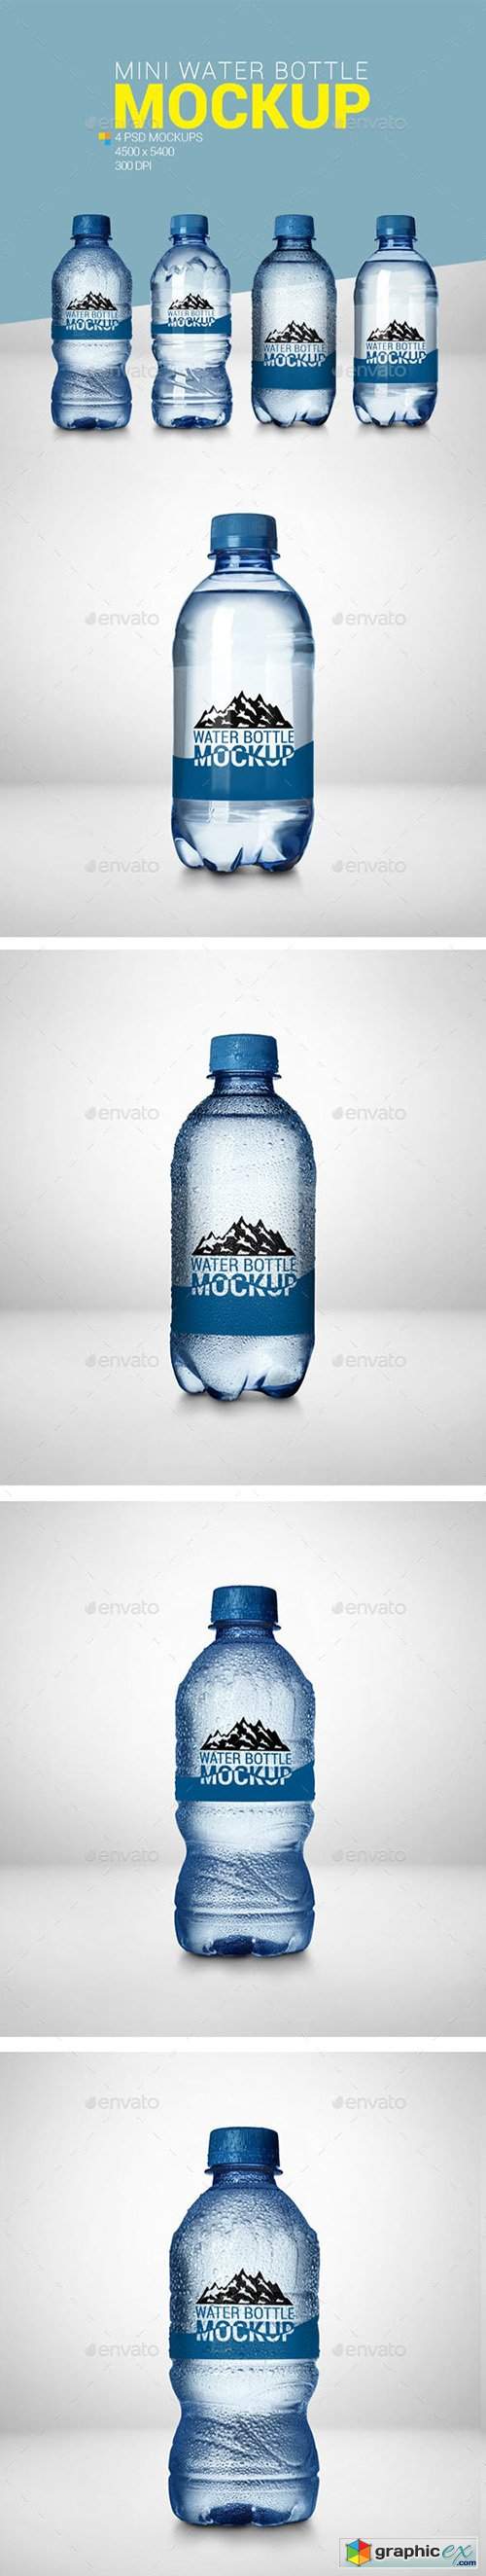 4 Mini Water Bottle Mockup